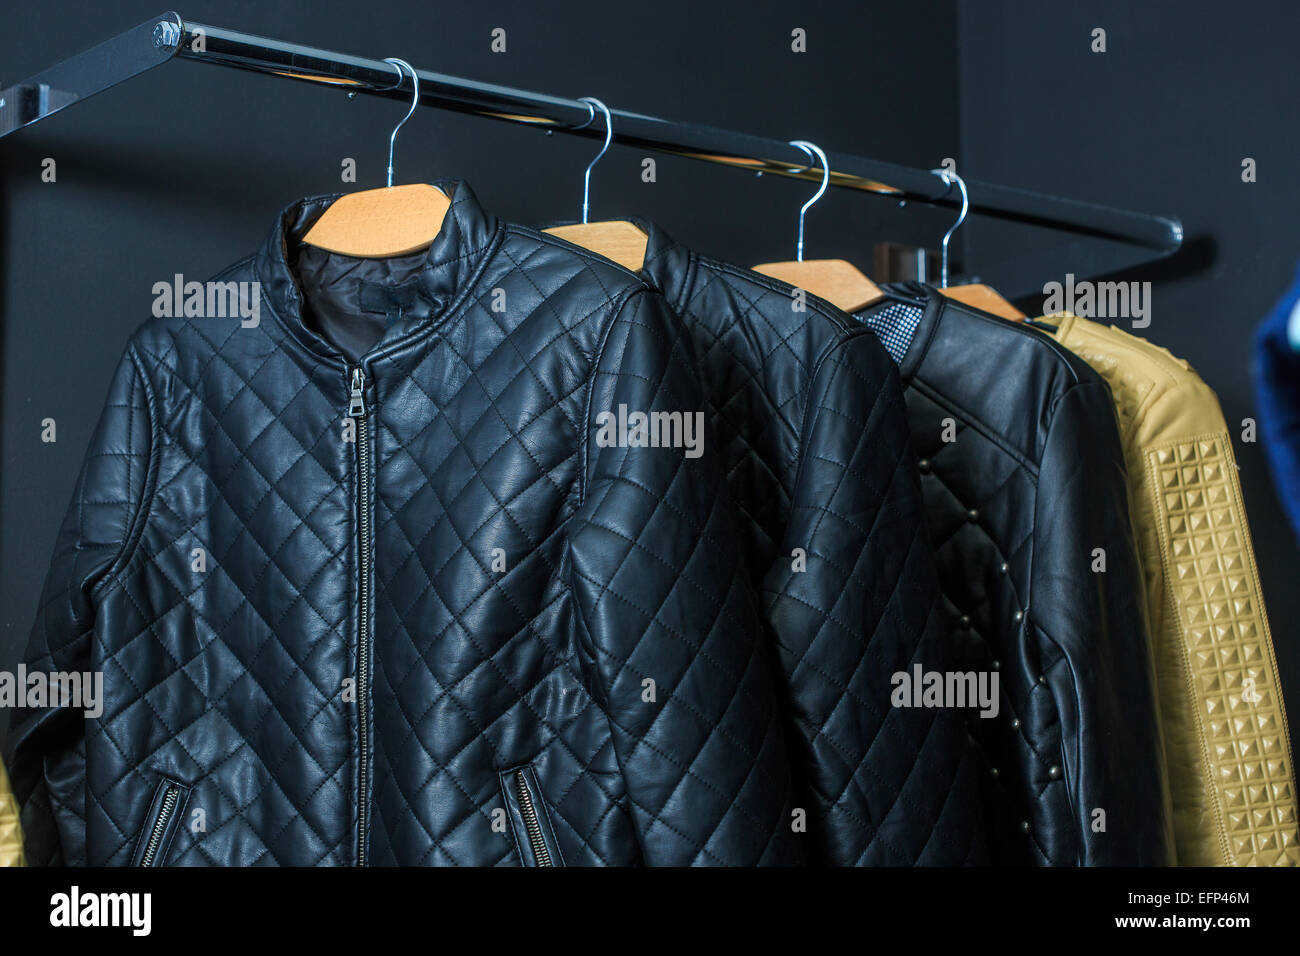 fashion jacket on hangers Stock Photo